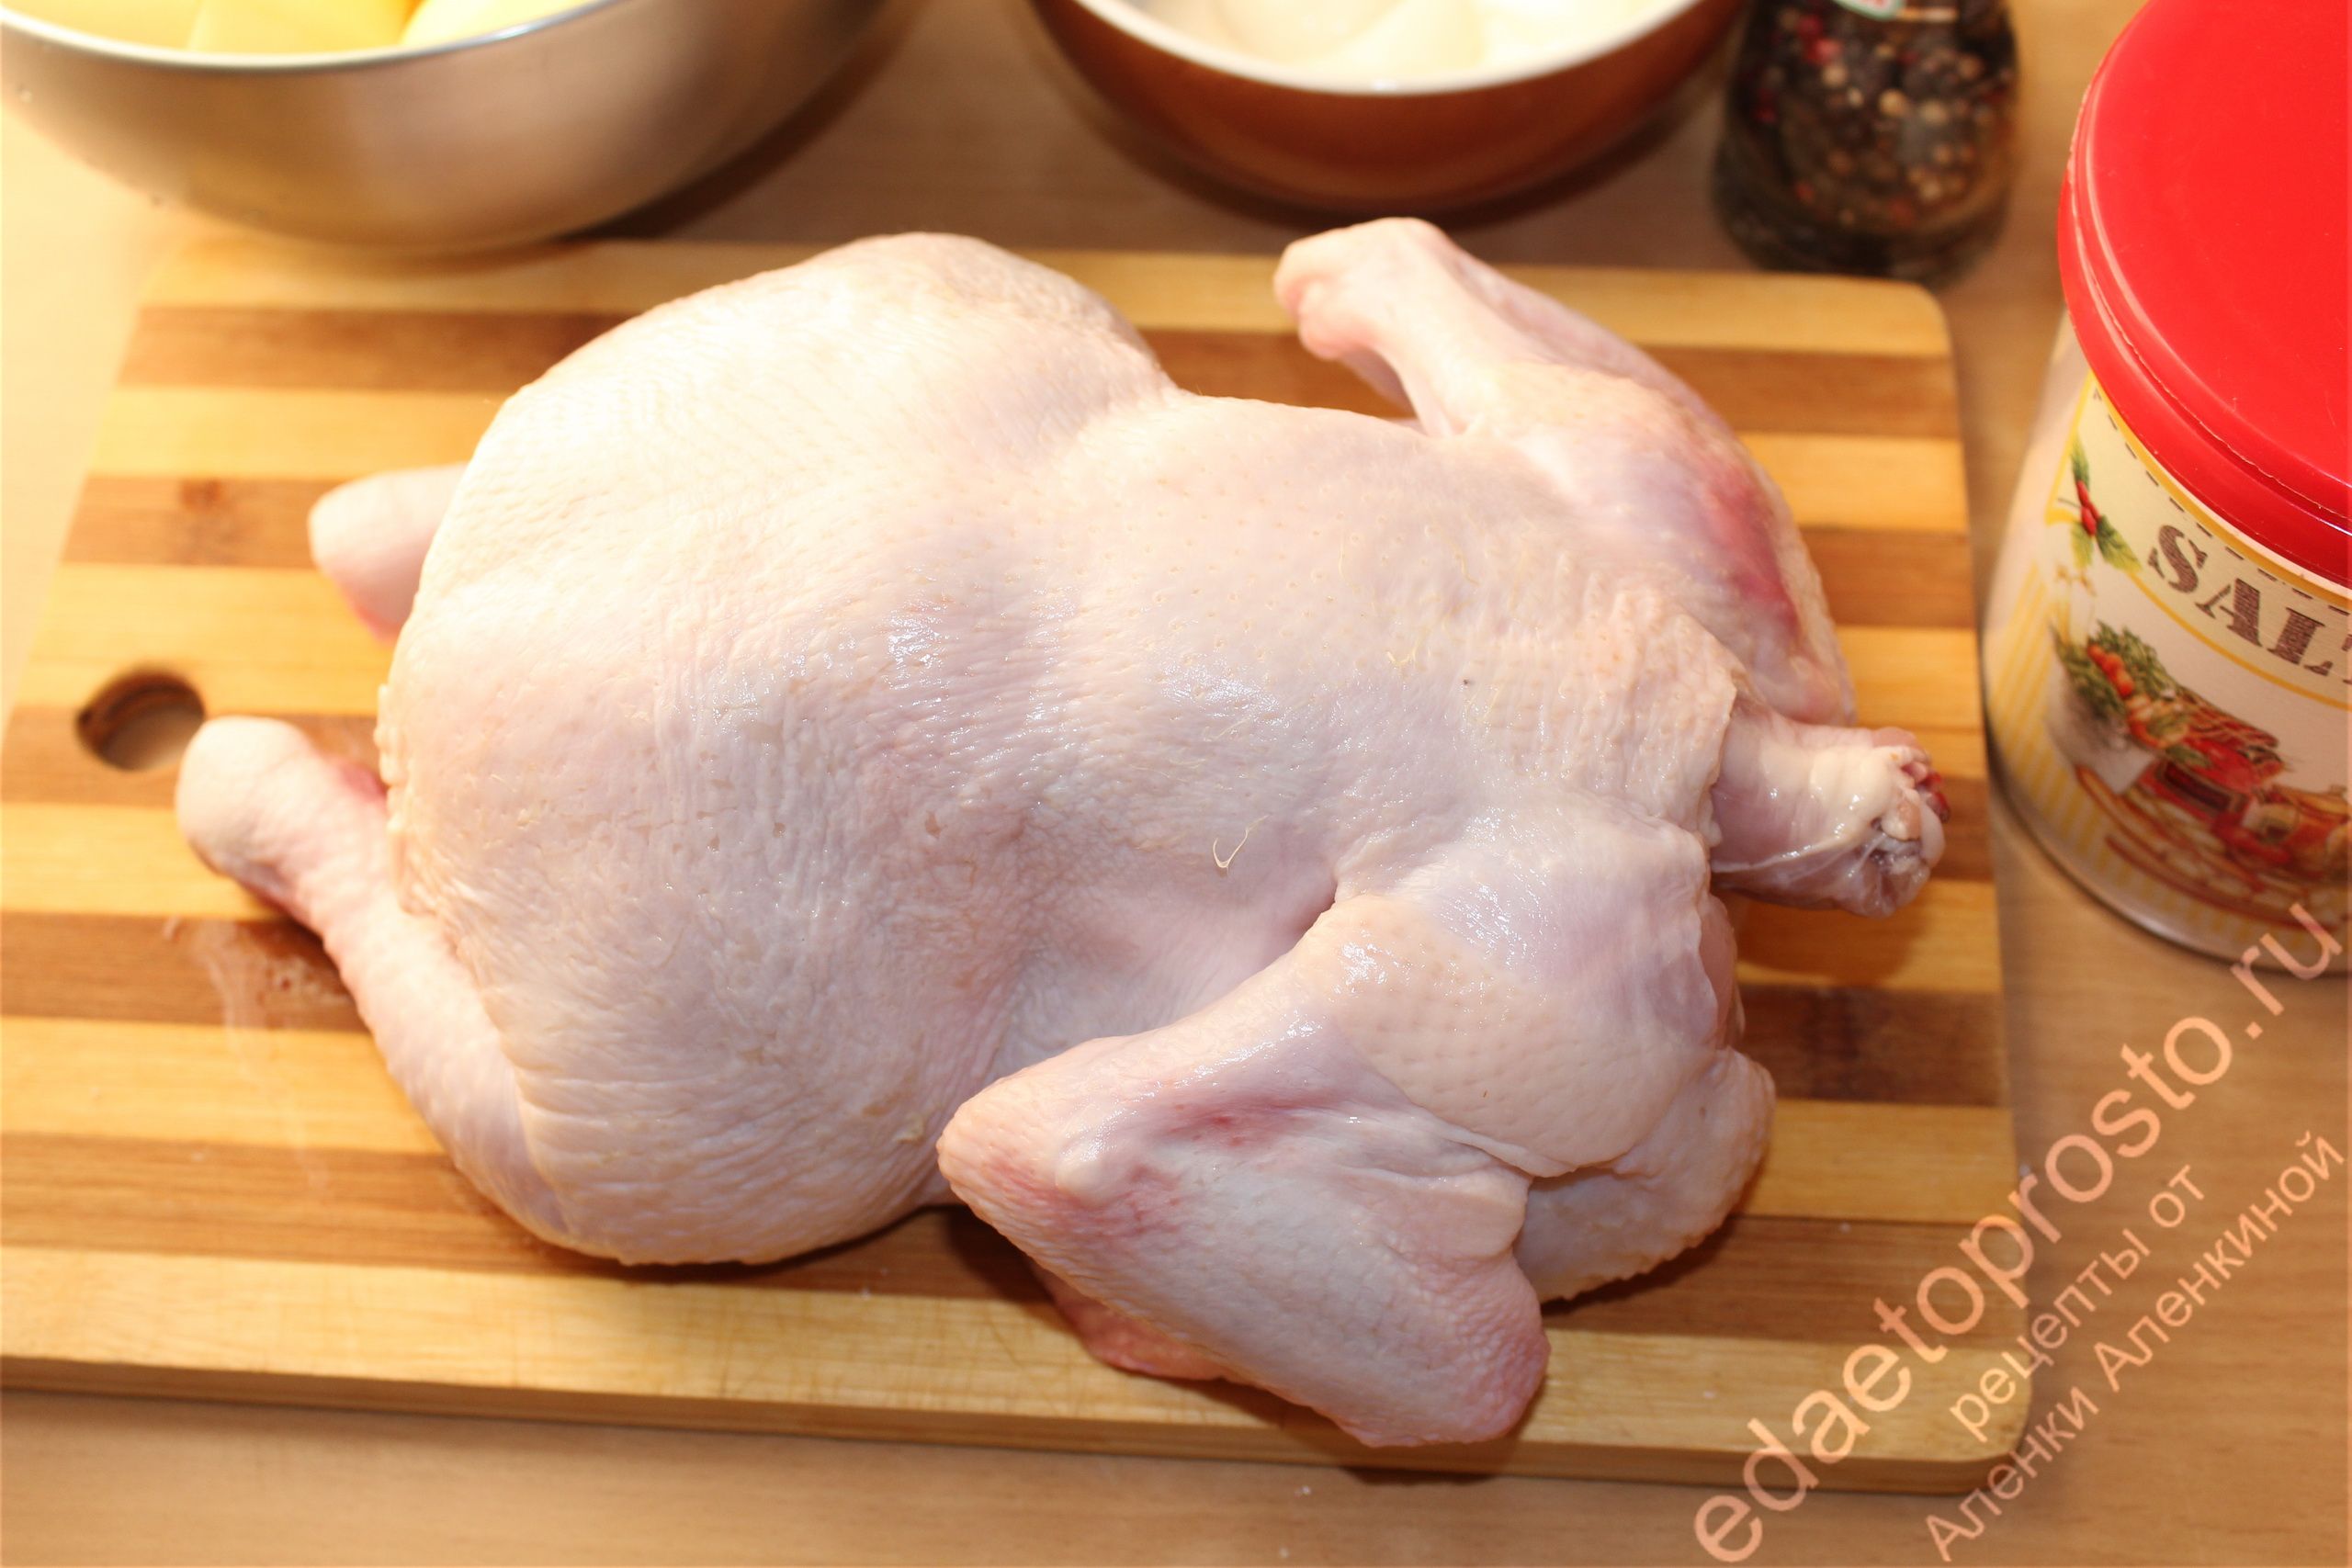 на фото куриная тушка перед приготовлением блюда